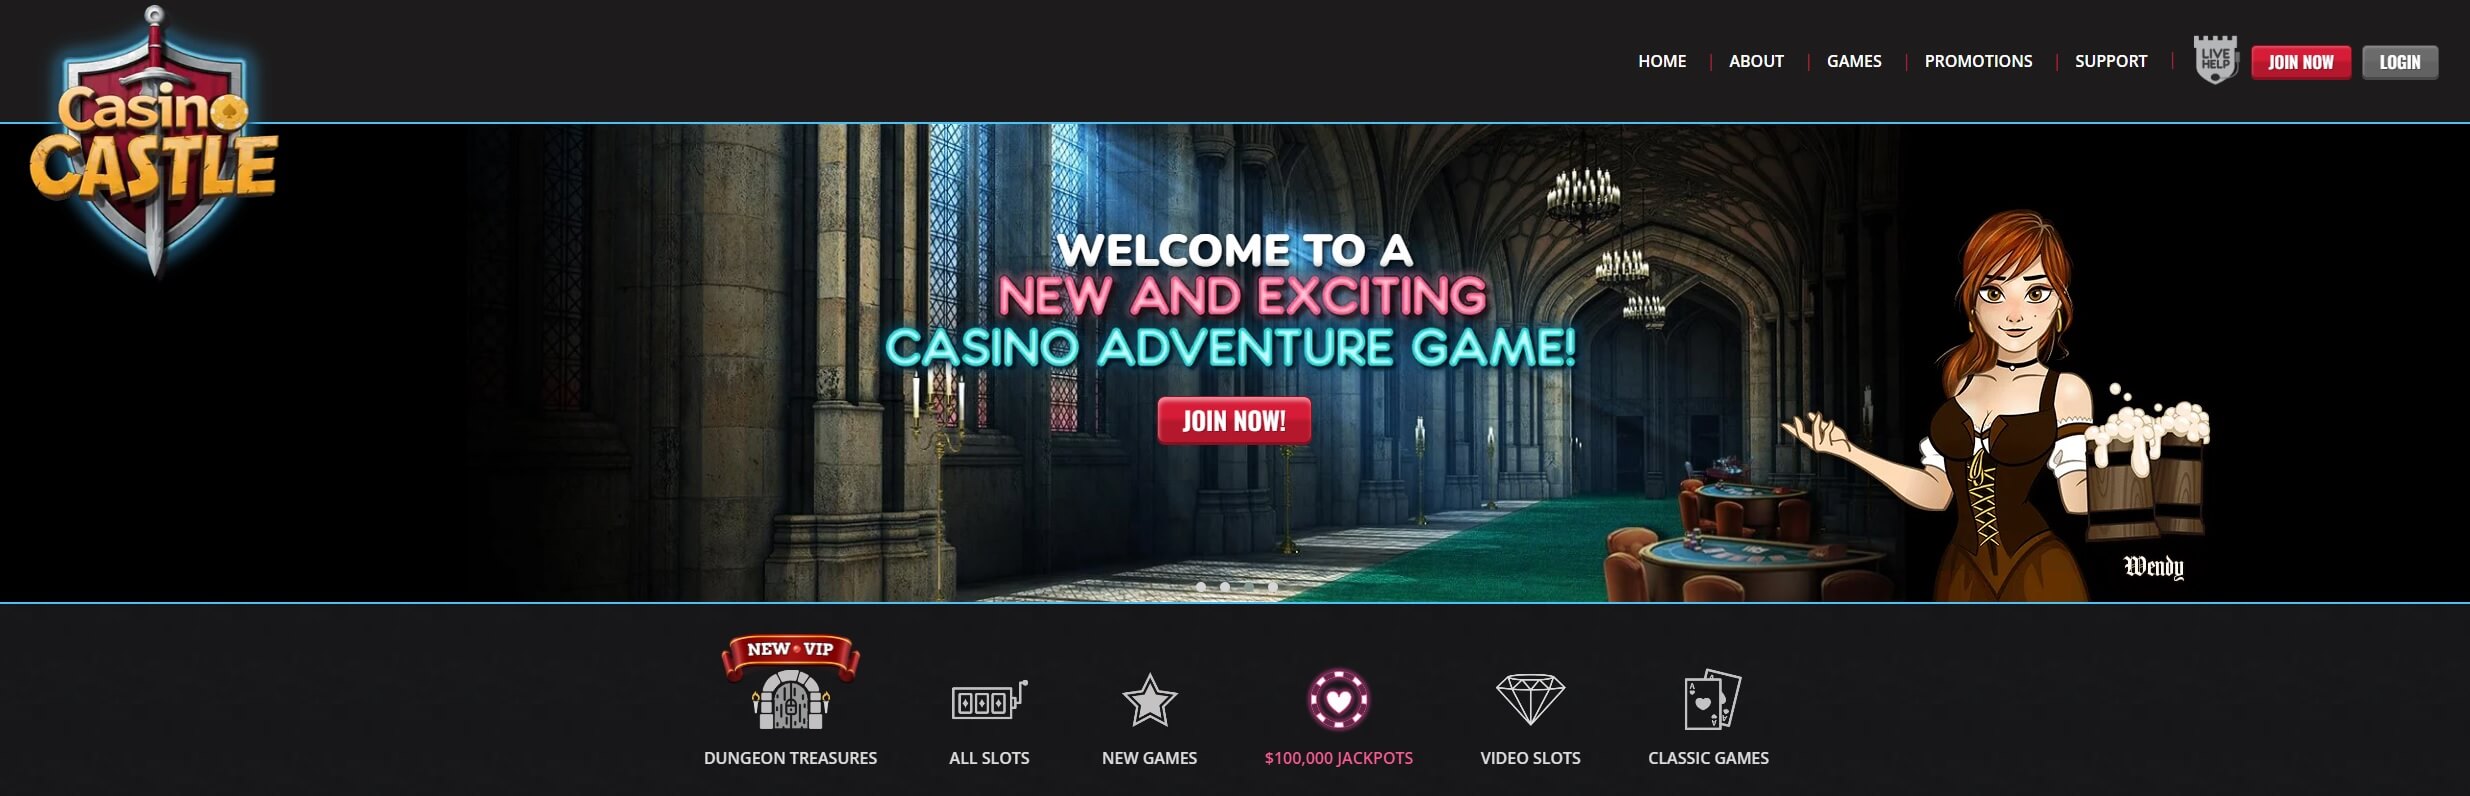 Casino Castle Homepage